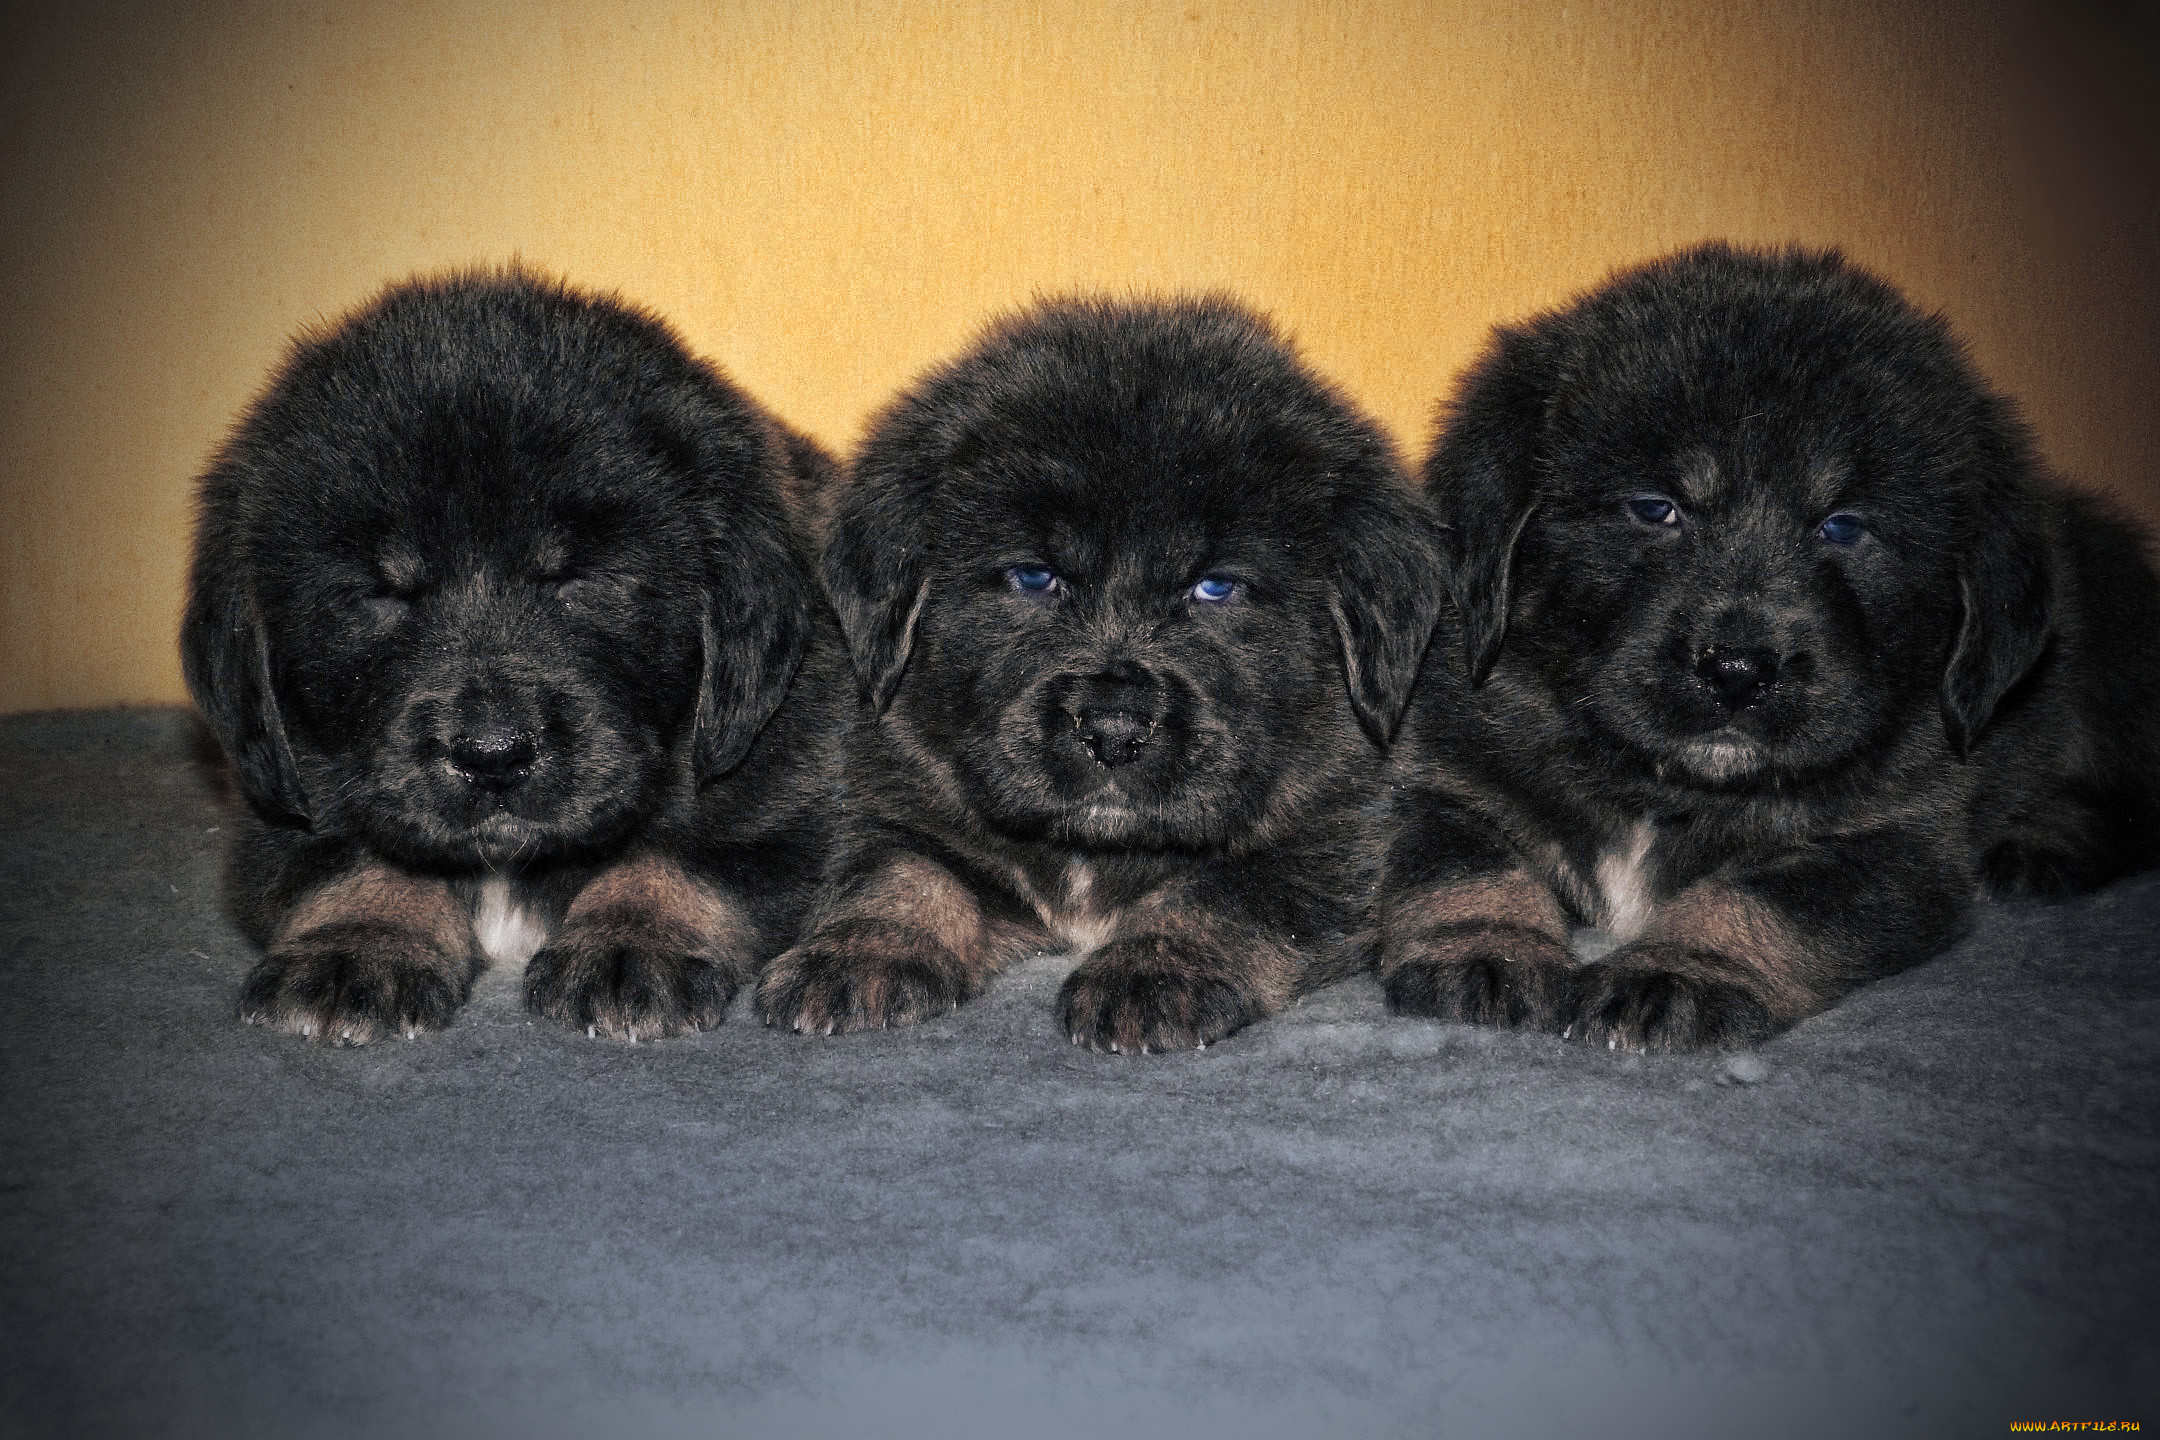 Обои Тибетский мастиф Животные Собаки, обои для рабочего стола, фотографии тибетский  мастиф, животные, собаки, собака, тибетский, мастиф Обои для рабочего  стола, скачать обои картинки заставки на рабочий стол.